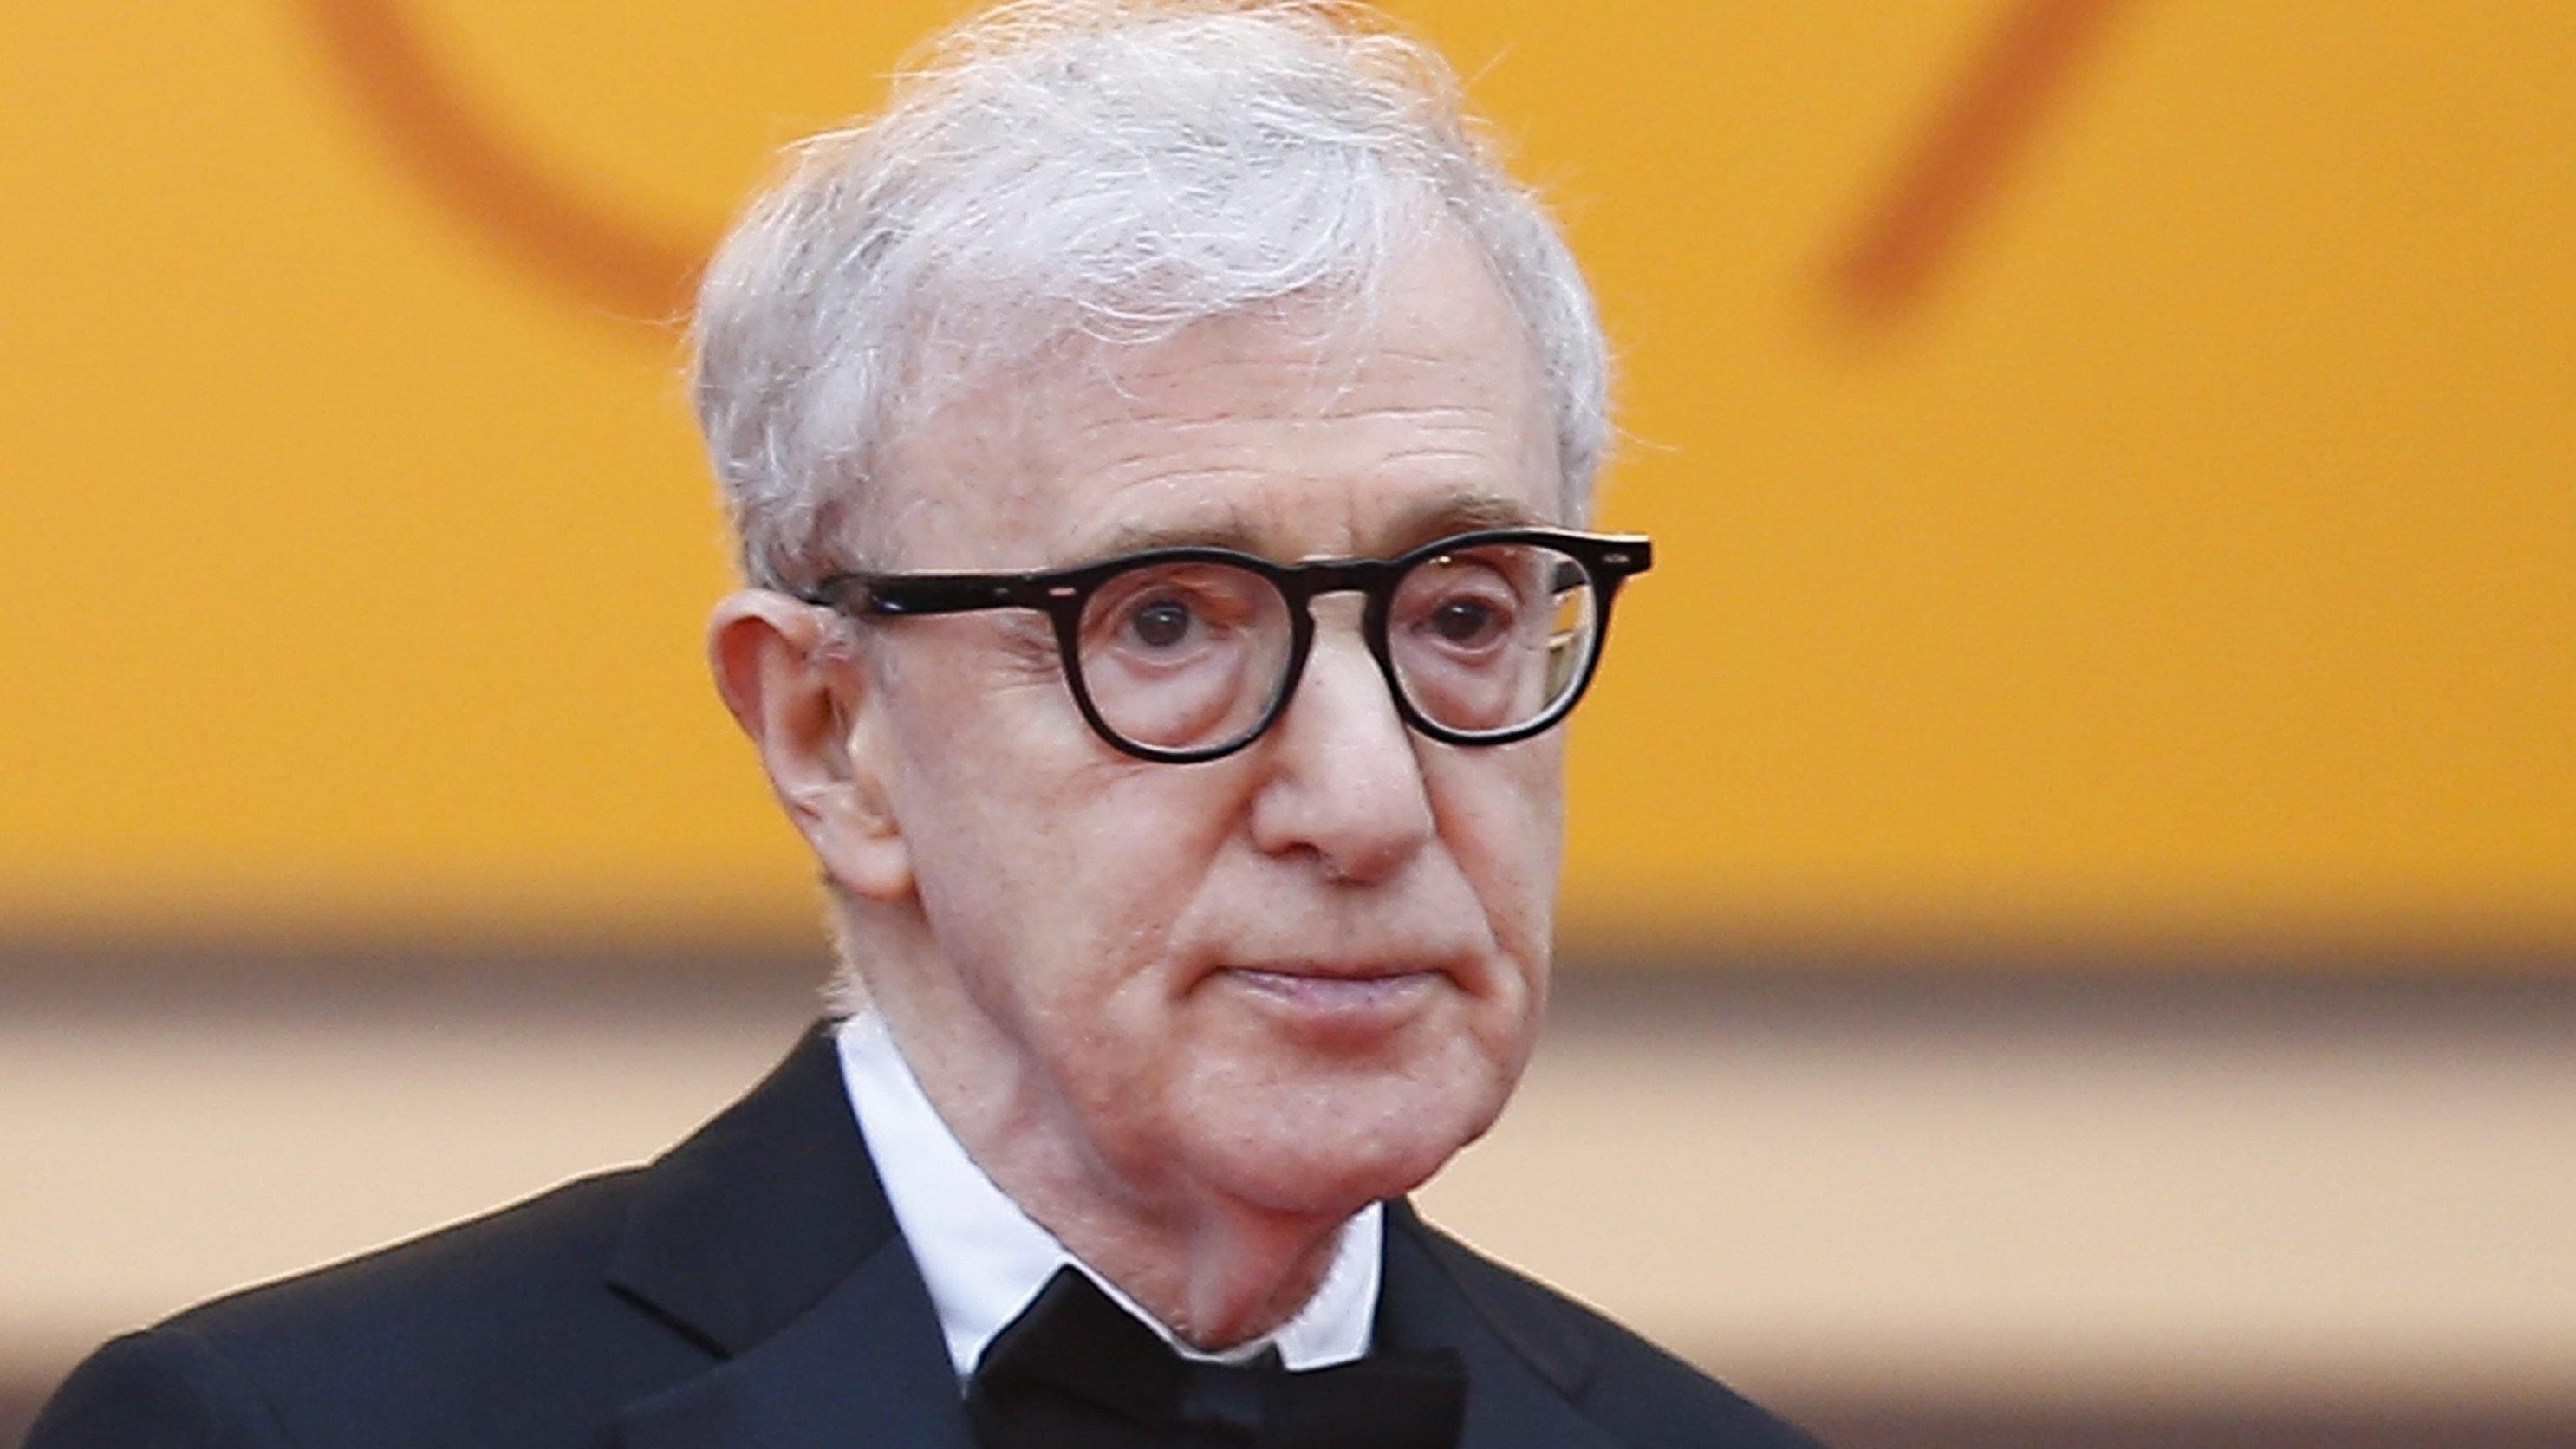 In den USA wird bald eine Dokumentation ausgestrahlt, die unter anderem von den Missbrauchsvorwürfen gegen Woody Allen handelt.